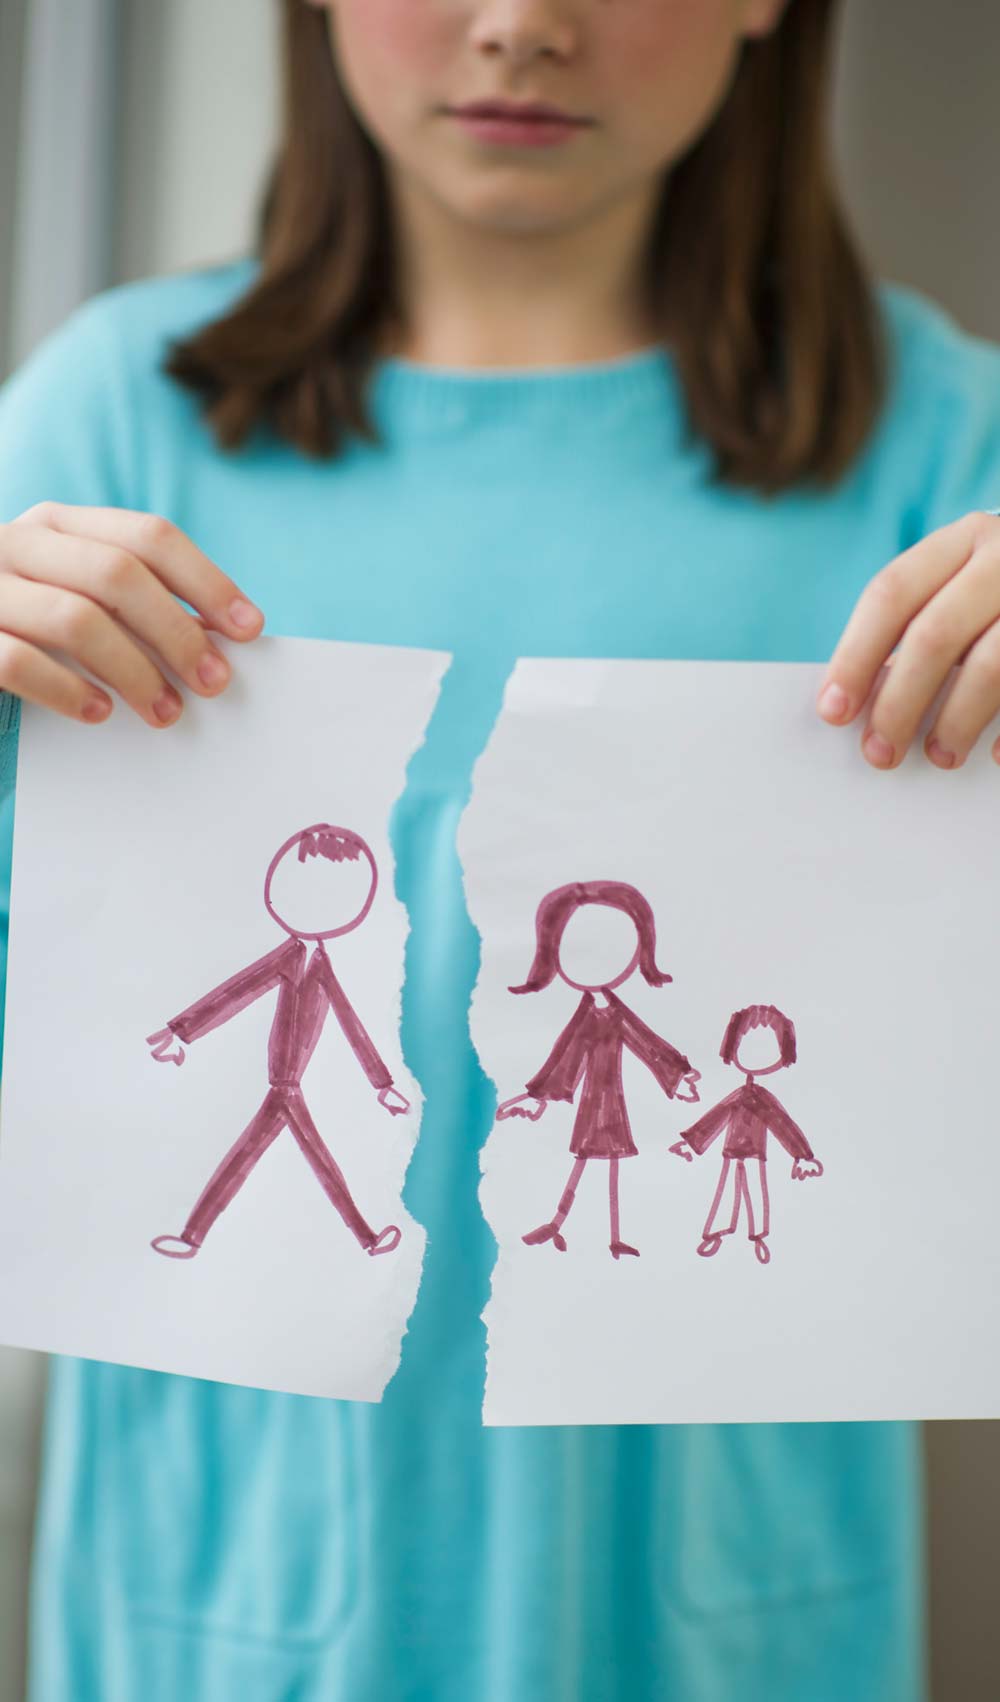 کودکان و طلاق: کمک به کودکان پس از جدایی